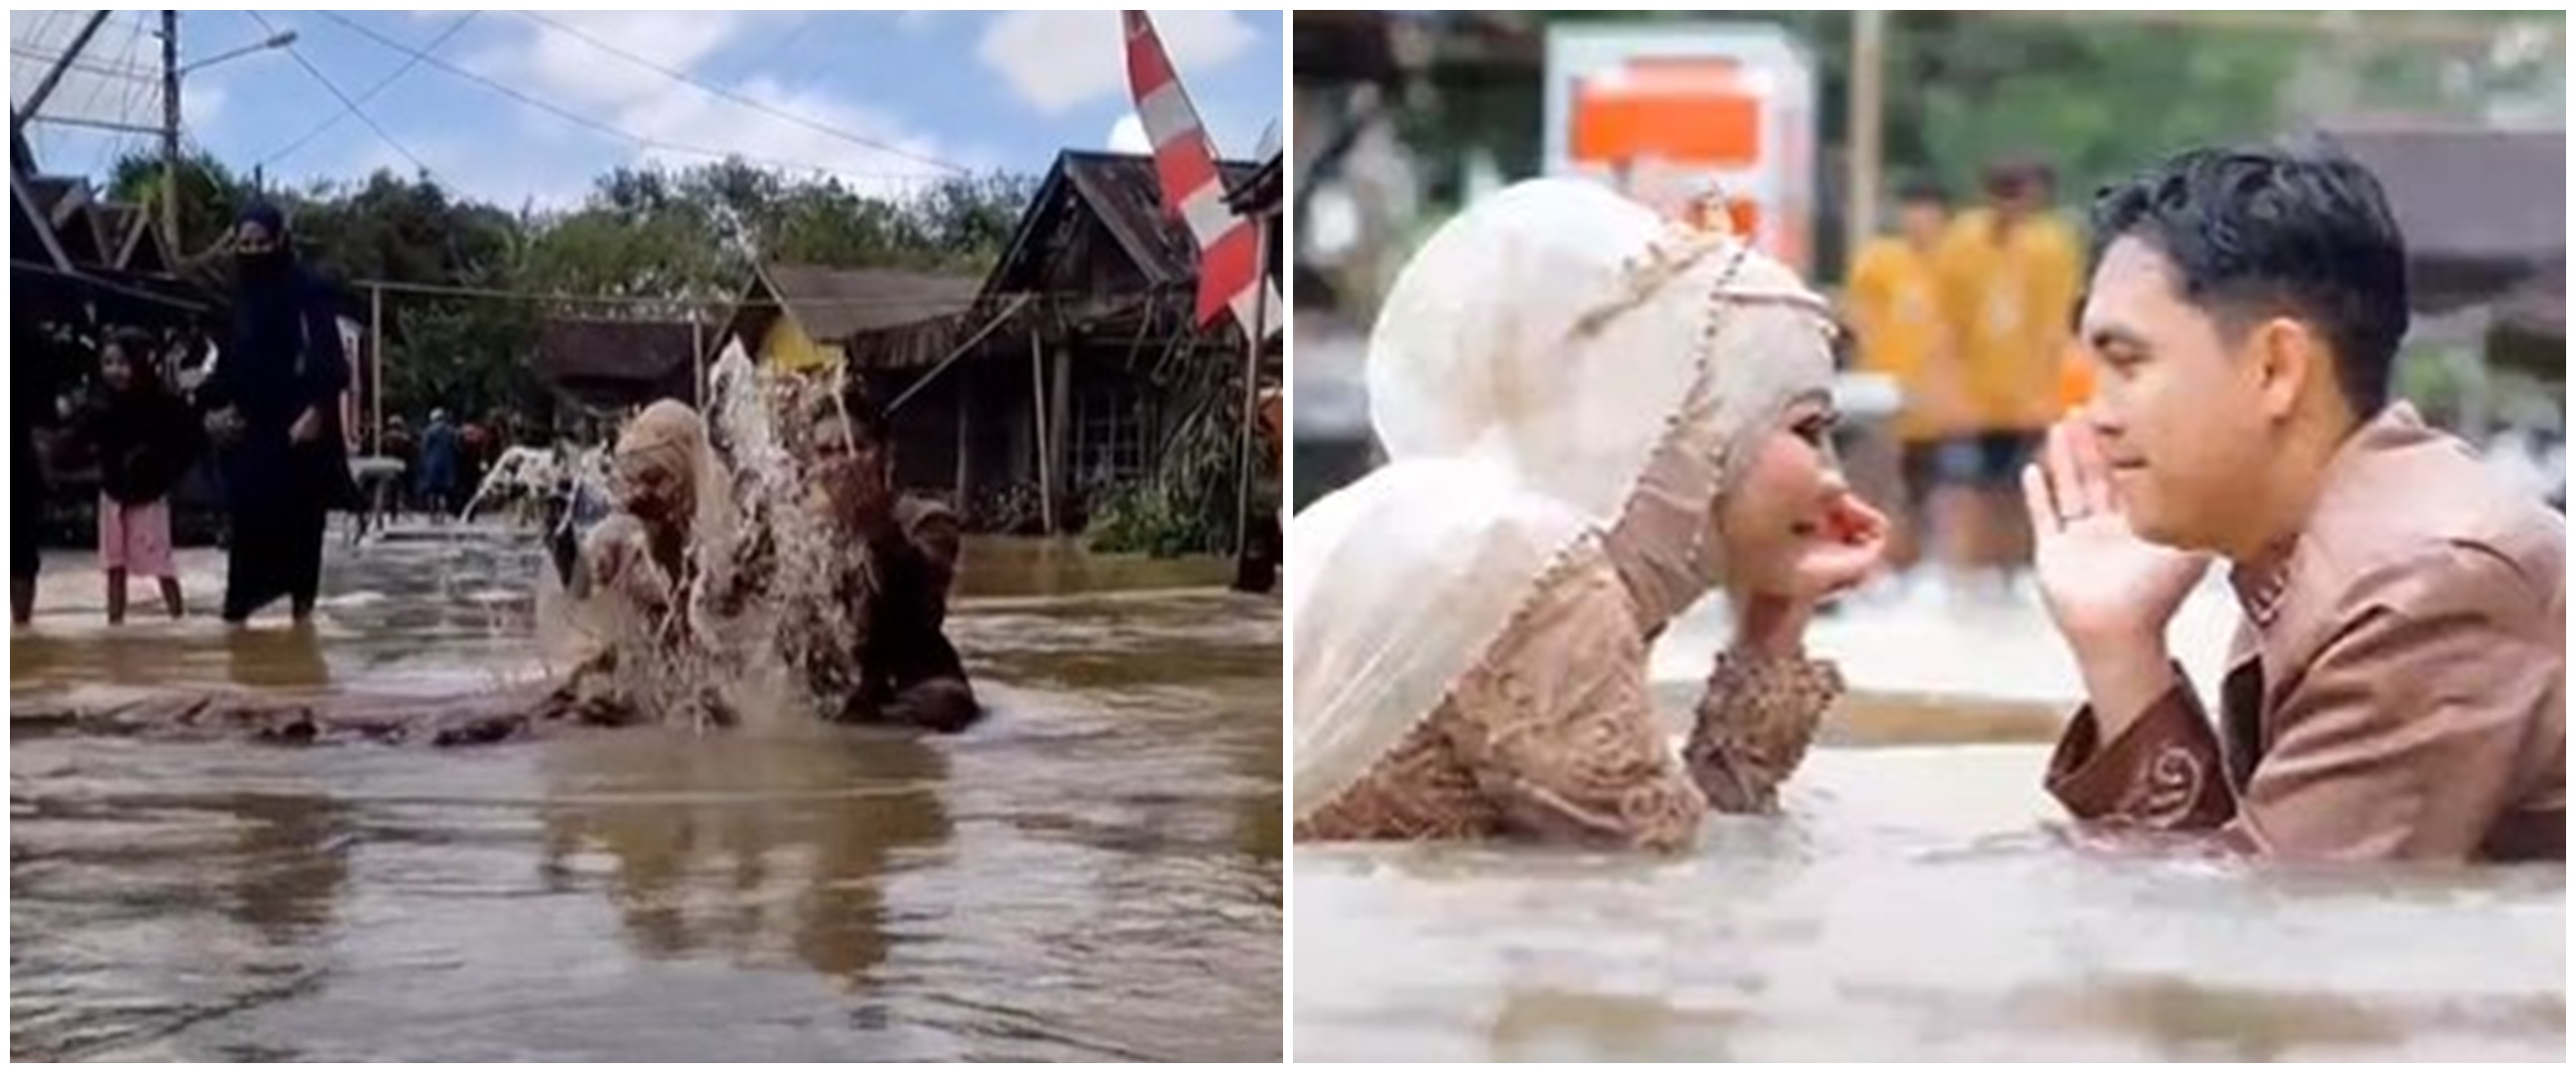 Momen tak biasa pengantin foto saat banjir, gaun pernikahan disorot